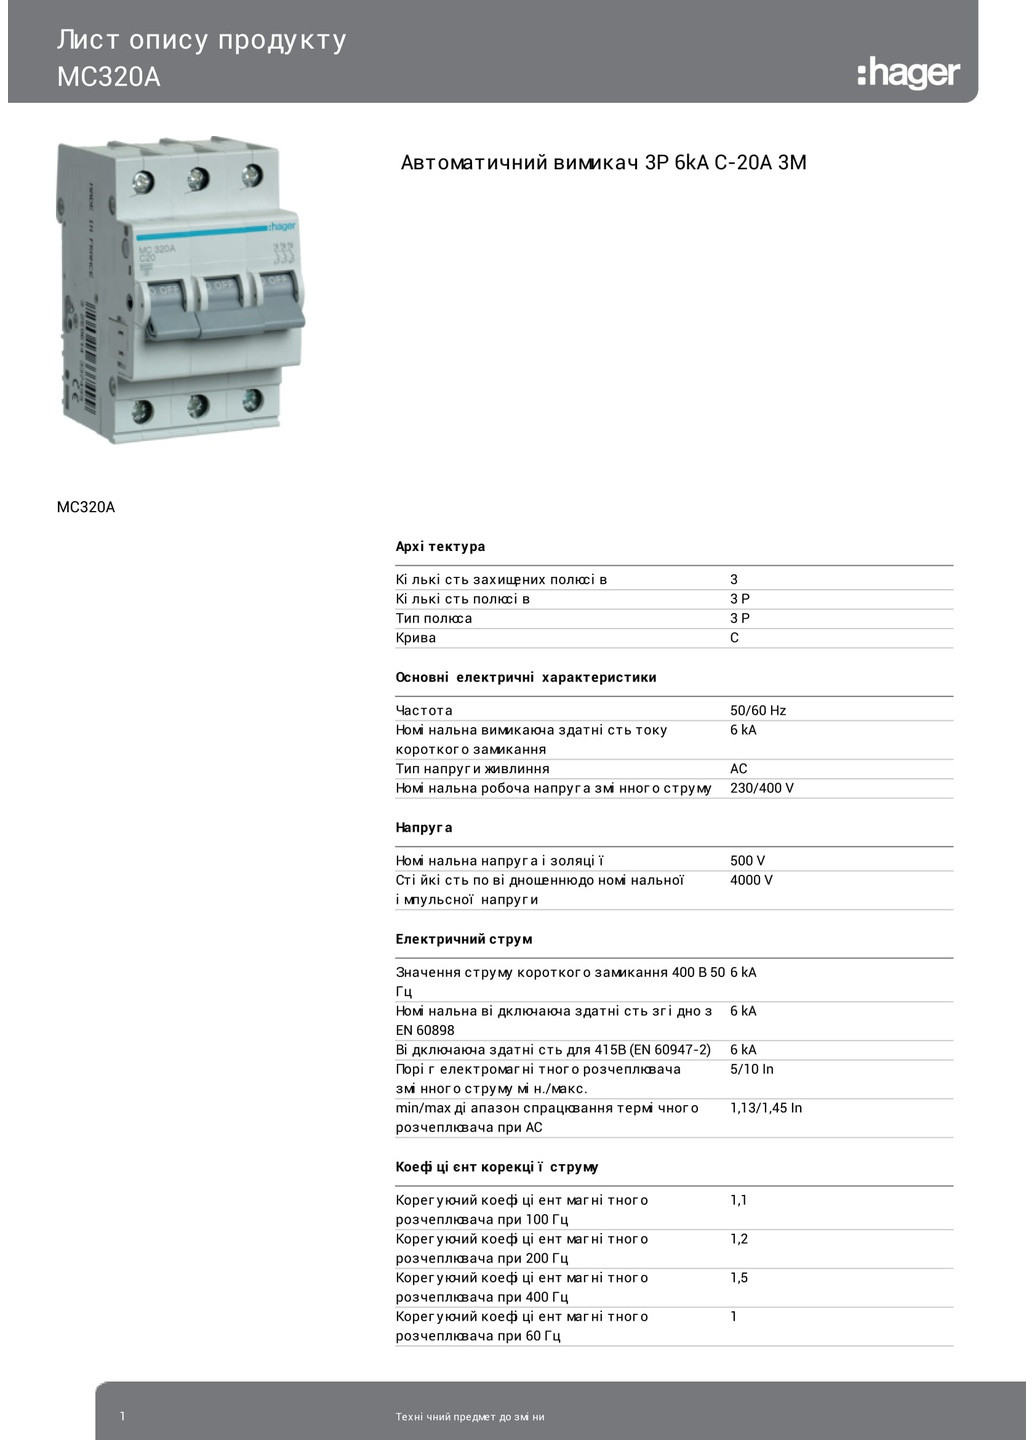 Вводный автомат трехполюсный 20А автоматический выключатель MC320A 3P 6kA C20A 3M (3169) Hager (265535608)